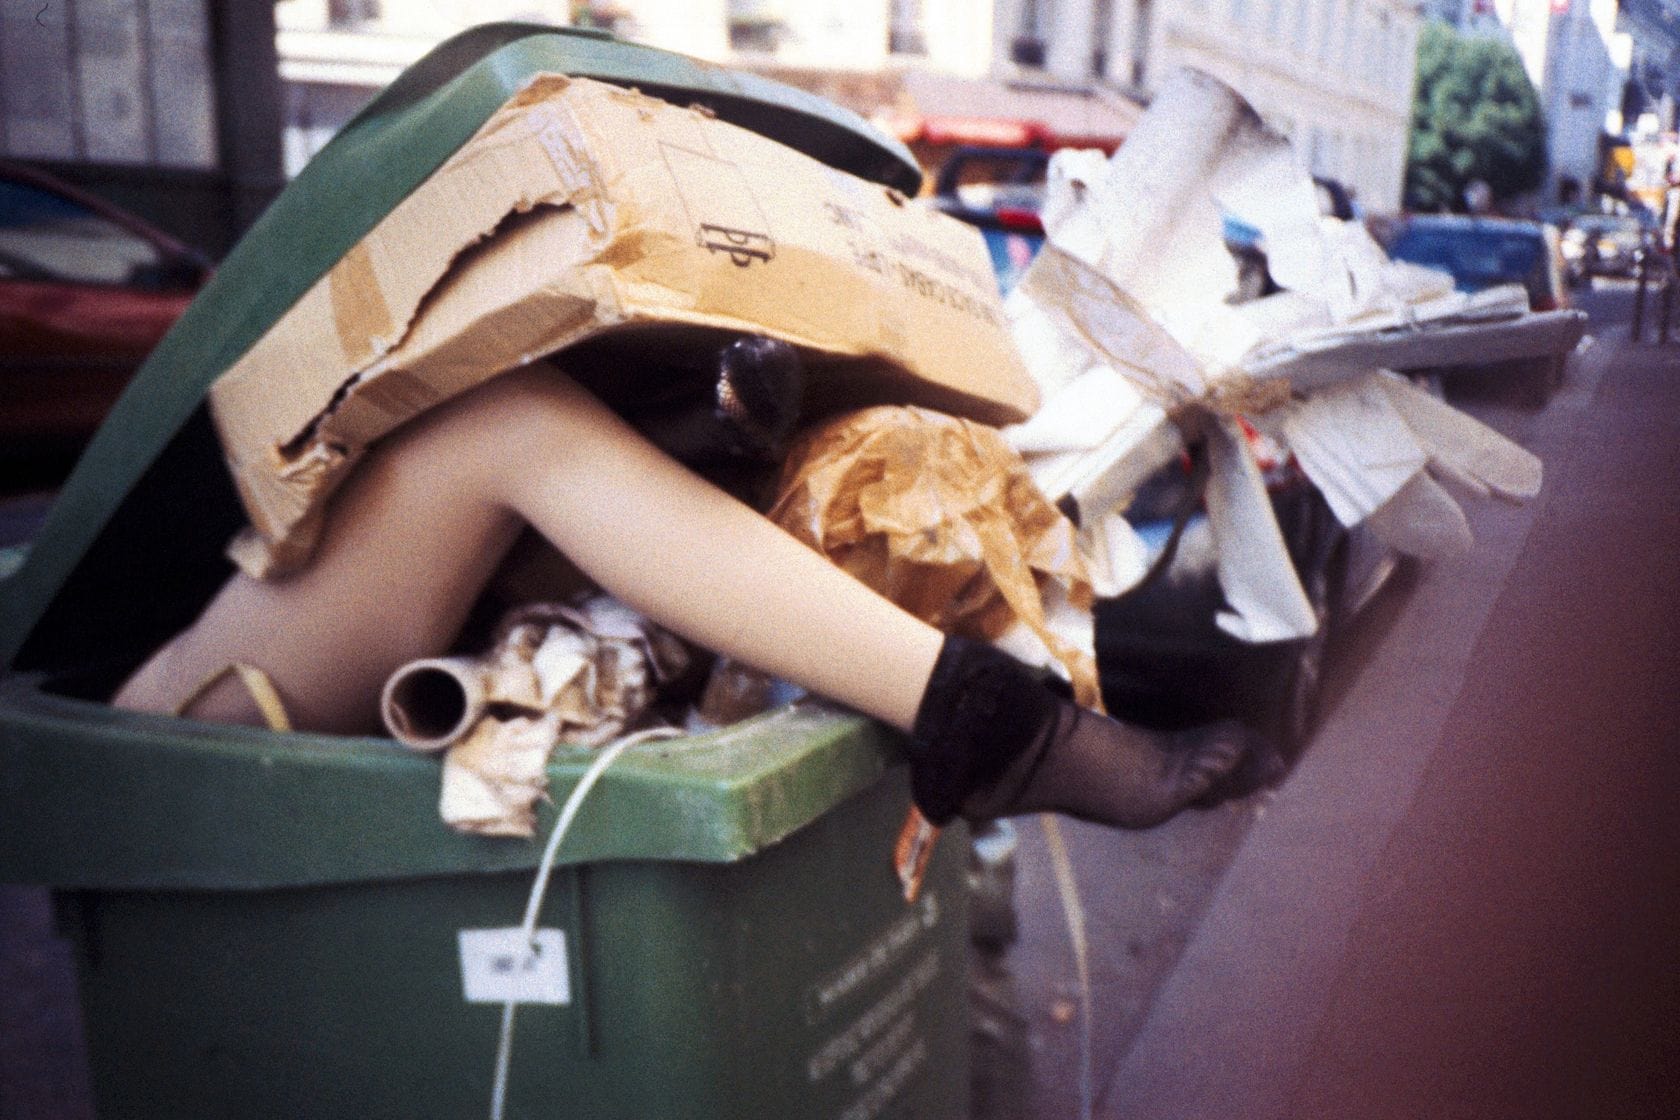 Un corps dans une poubelle ? (Photo Philippe Leroyer / FlickR / cc)